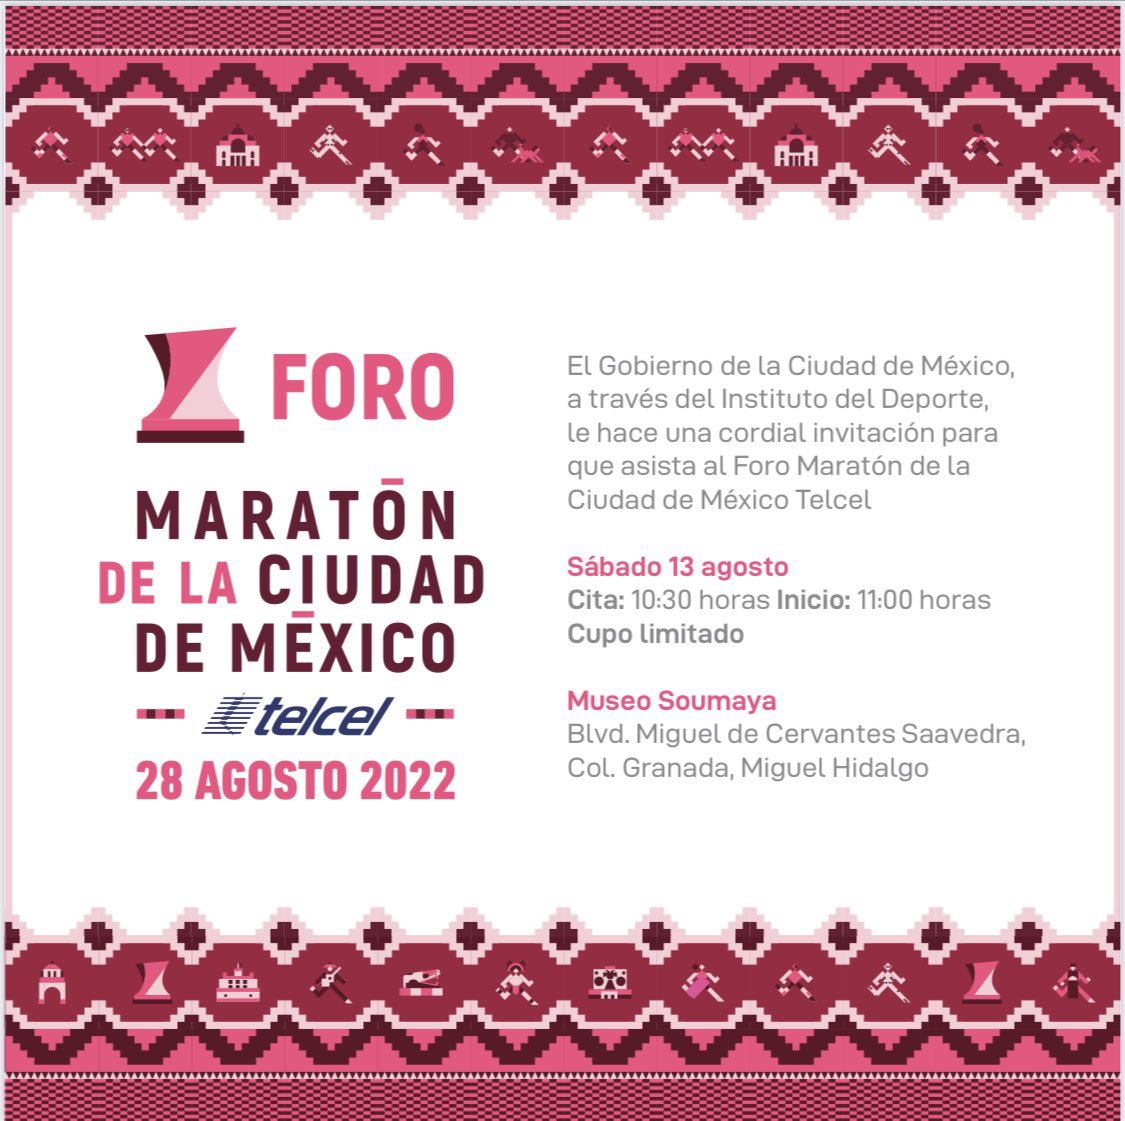 ¡Foro Maratón será un gran evento! 😎 Ponencias de las marcas que patrocinan el Maratón de la Ciudad de México, @adidasMX, @gatorademex, Avene, así como el anuncio de las y los corredores elite, asiste empieza a vivir el ambiente de esta enorme fiesta de la ciudad 🥳